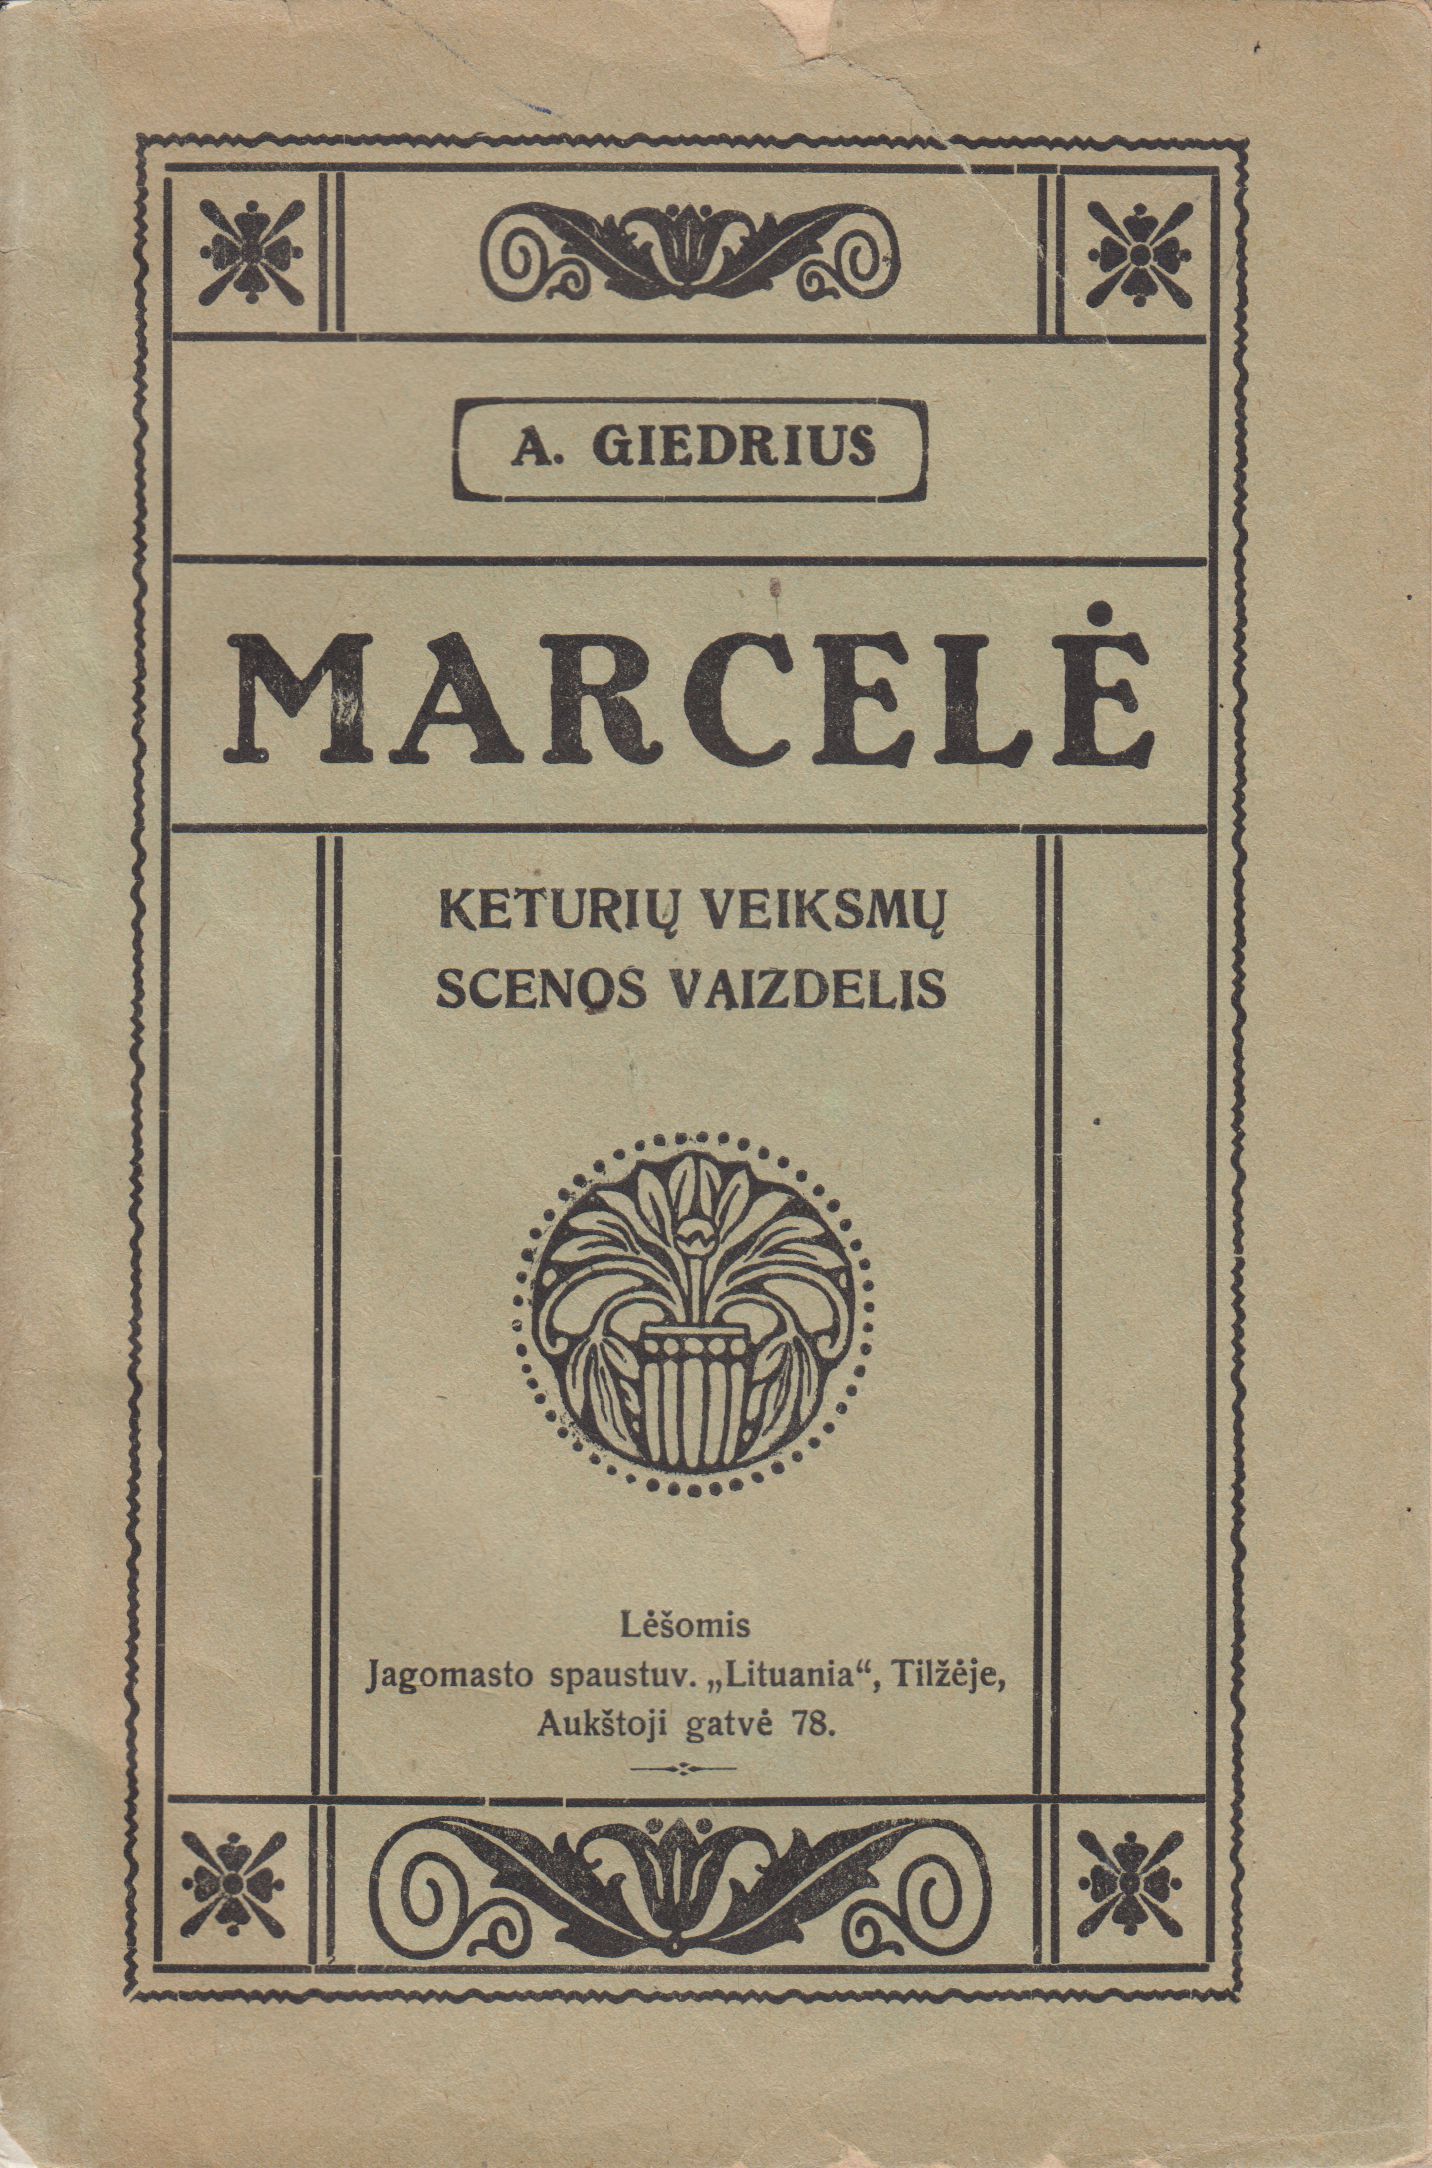 A. Giedrius. Marcelė: keturių veiksmų scenos vaizdelis. Tilžė: Jagomasto spaustuvė „Lituania“, 1920 m. MLLM 3158